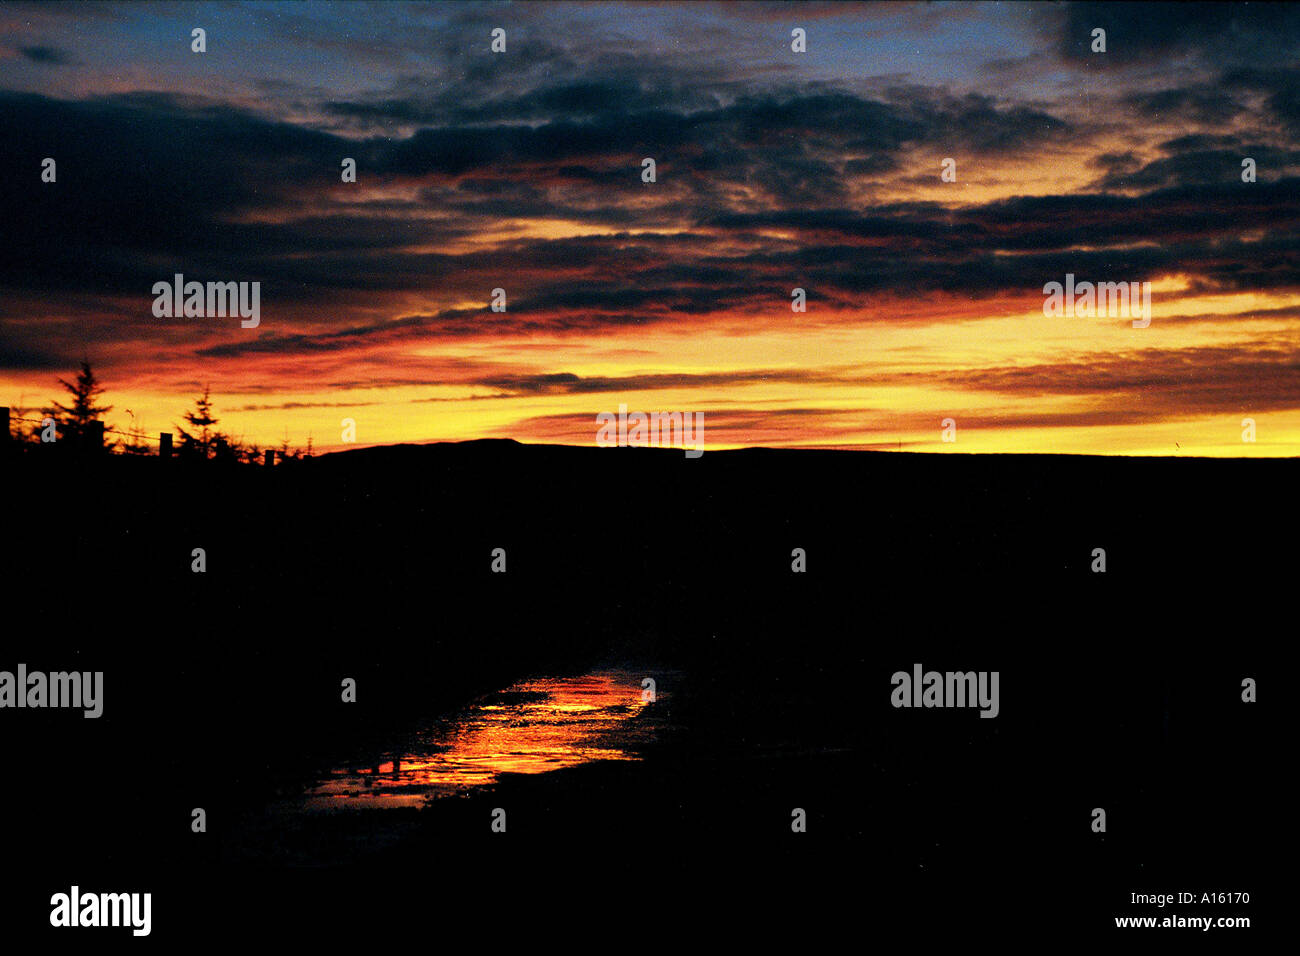 La ricchezza di colori del tramonto sono mostrati in questa immagine dall'isola scozzese di Islay Foto di Ami Vitale Foto Stock